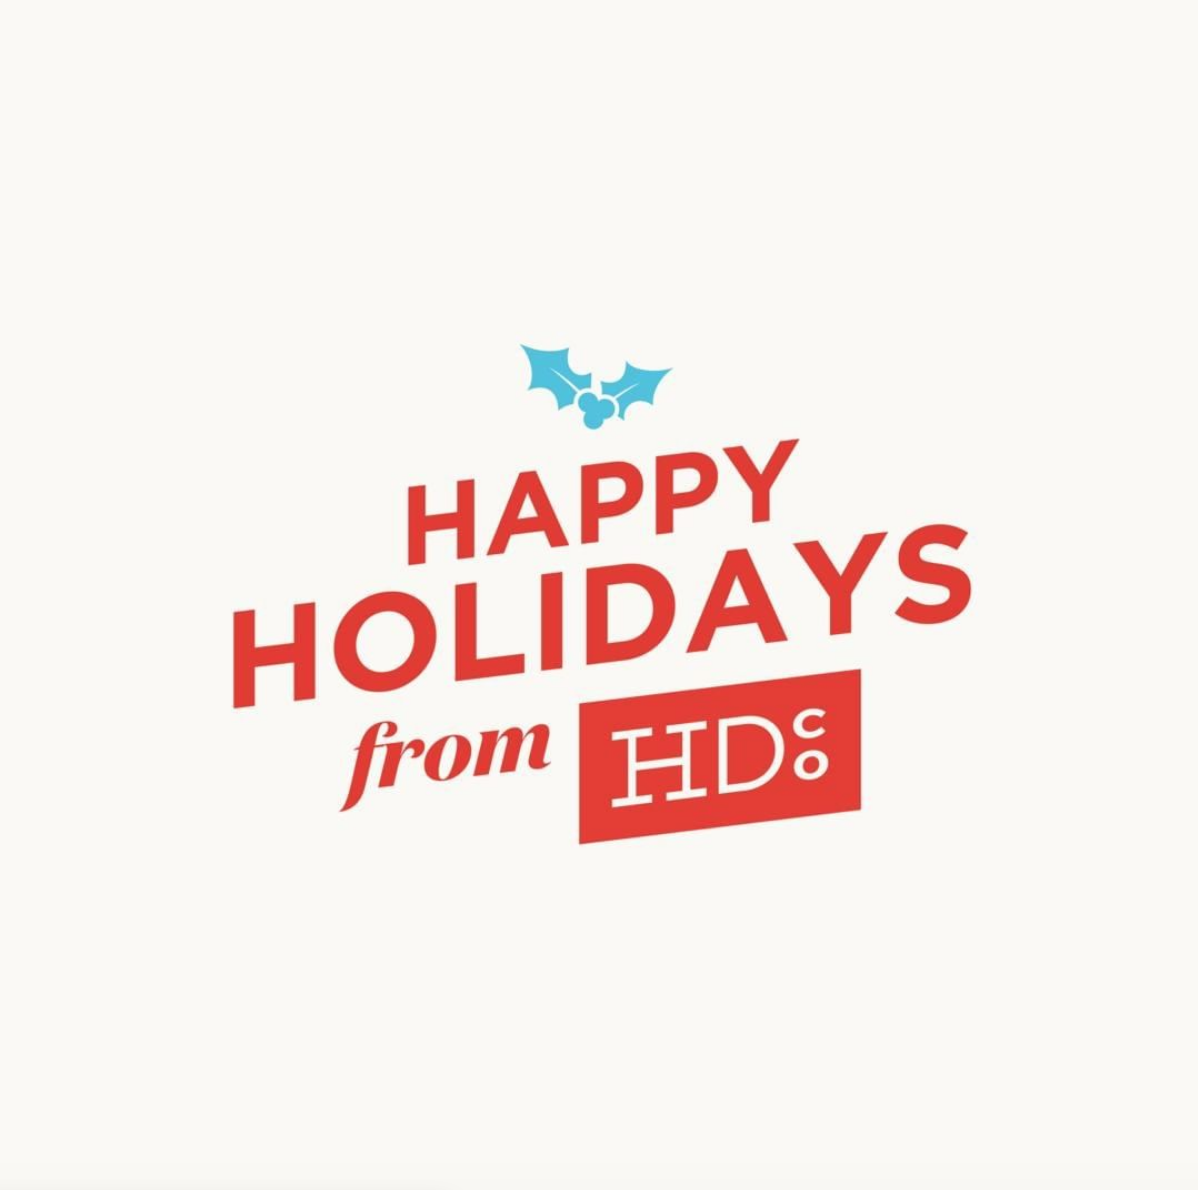 Happy holidays from HDco 2018